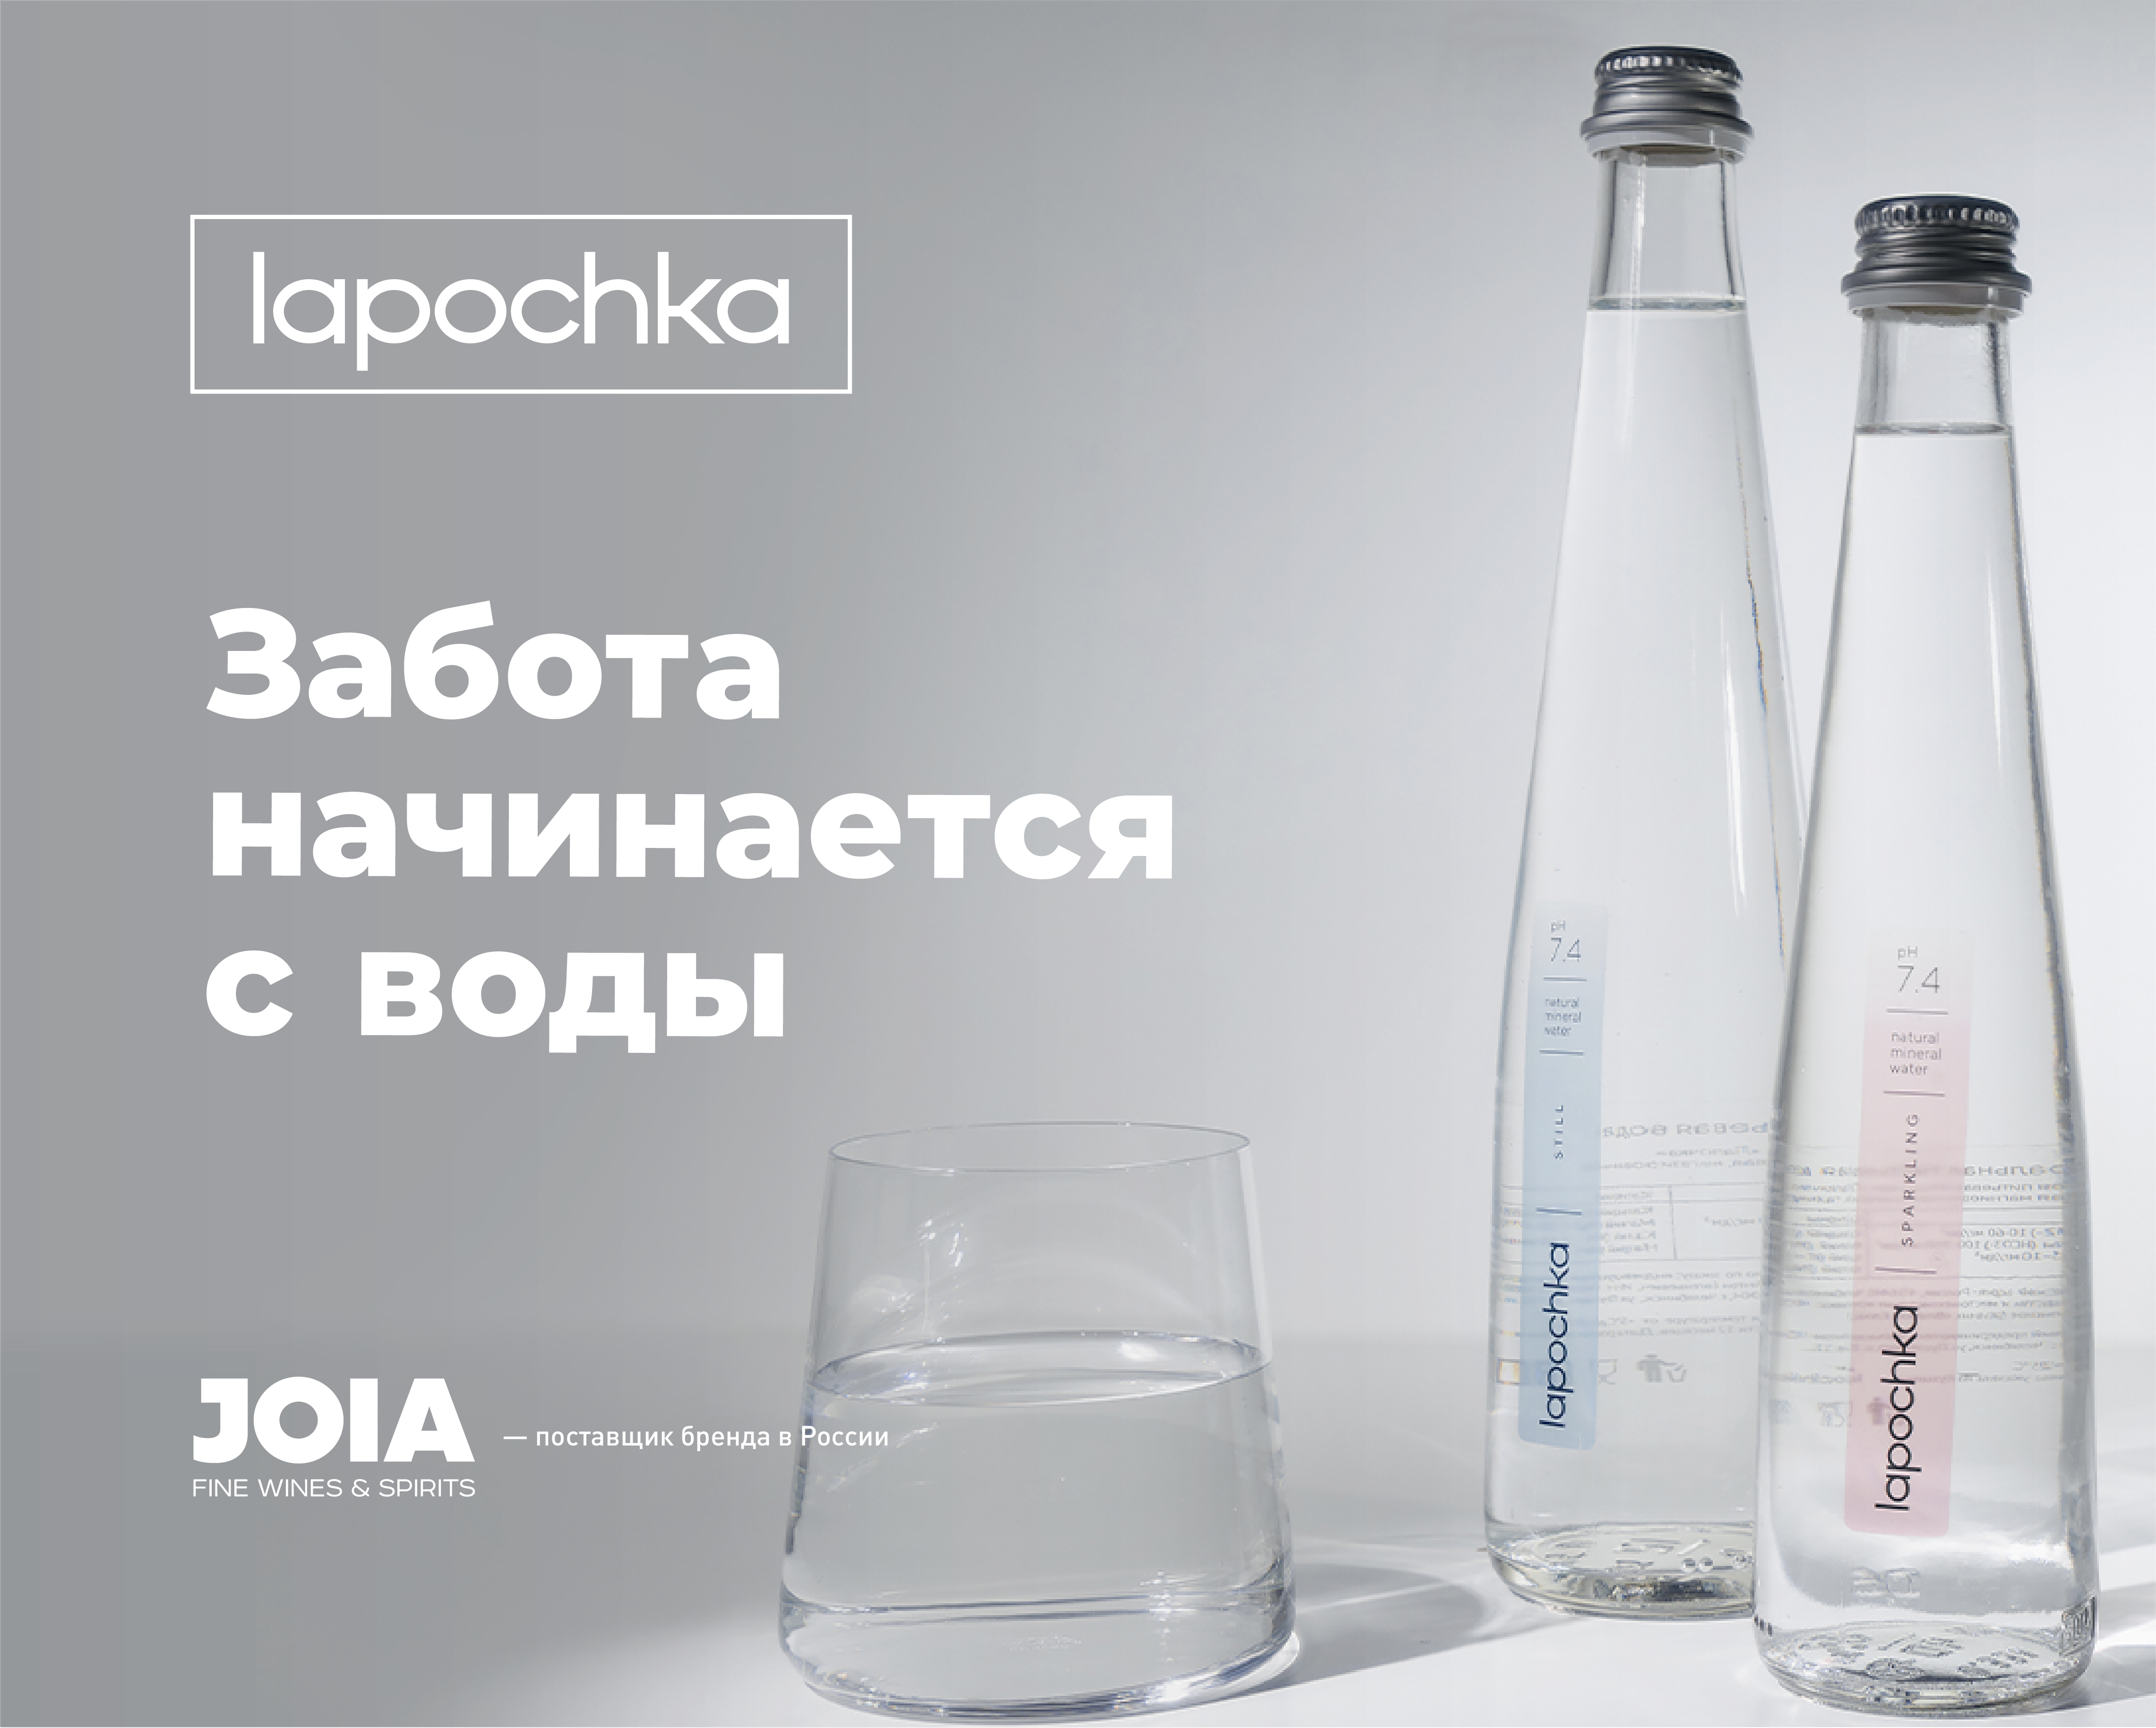 Lapochka (вода)